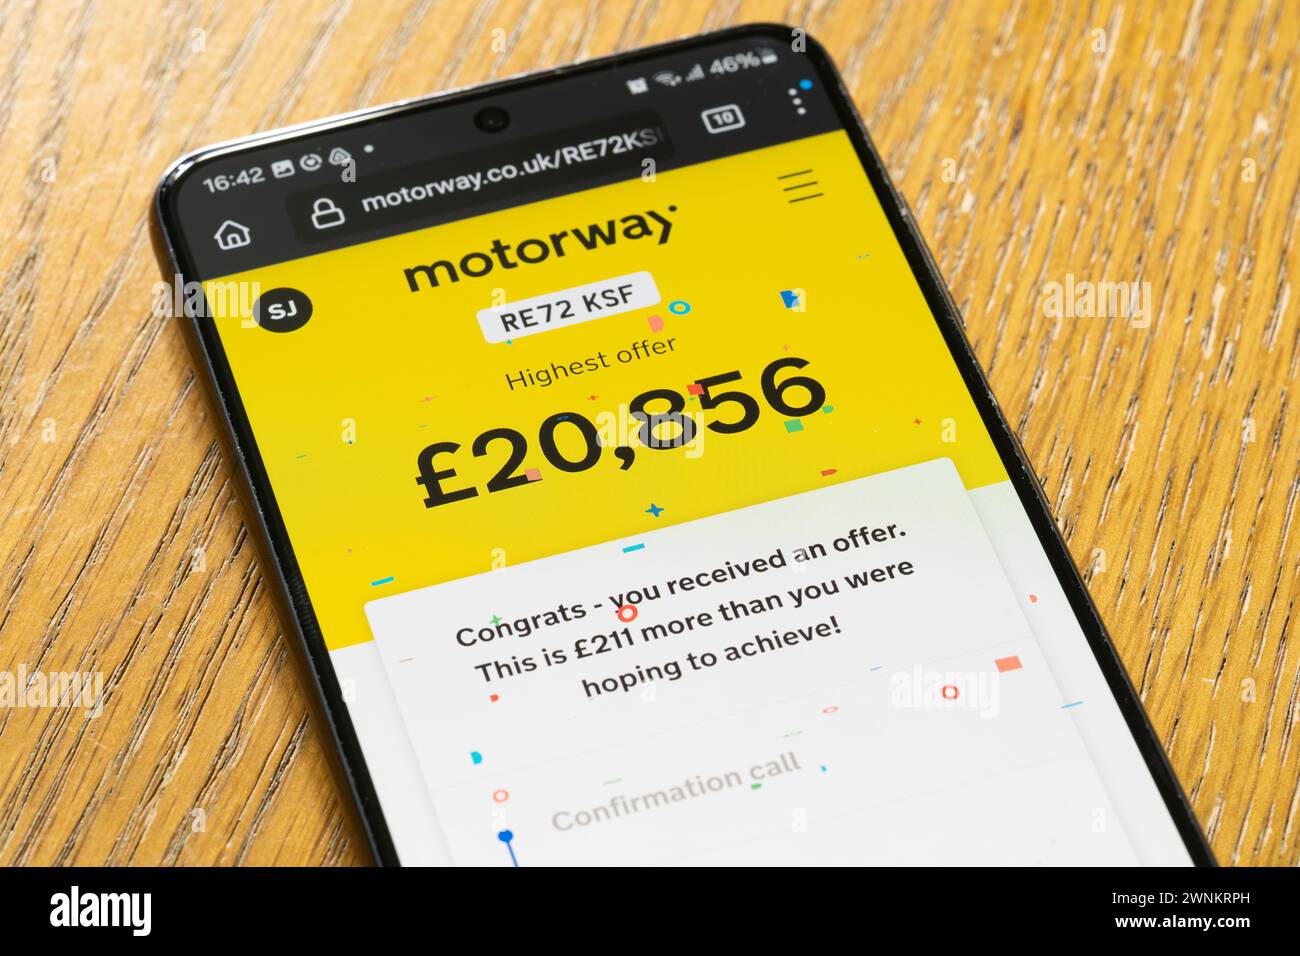 Un preventivo per un'auto in sterline inglesi sull'app Motorway su uno smartphone, Regno Unito. Concetto: Ricevere un'offerta, ottenere un preventivo, vendere la propria auto, vendere auto Foto Stock